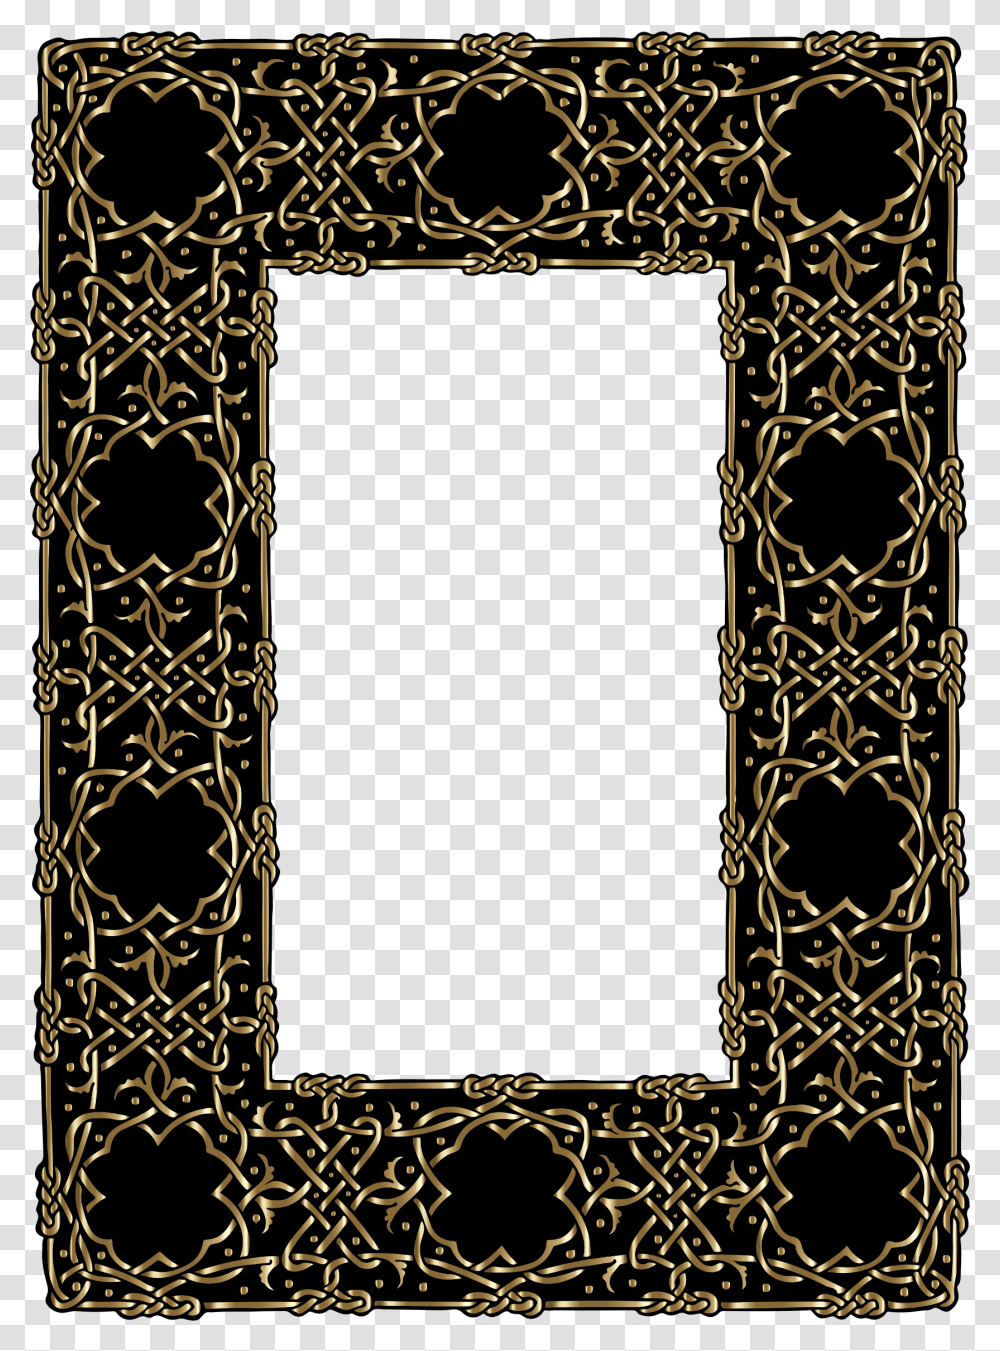 Gold Ornate Geometric Frame Clip Arts Celtic Knot Frame, Rug, Alphabet, Pattern Transparent Png